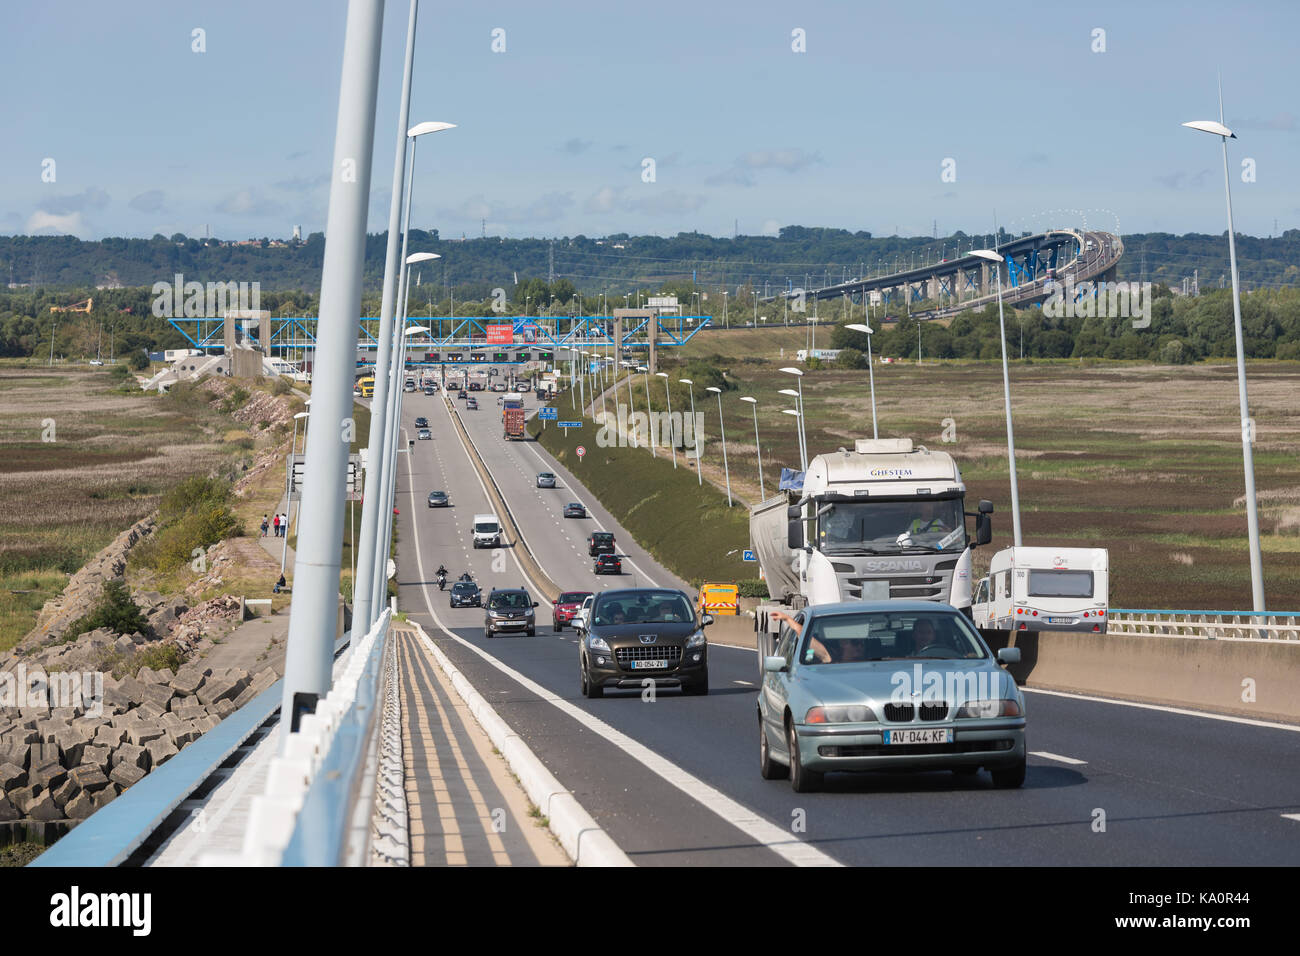 Le Havre, France - 24 août 2017 : voitures à pont de Normandie, pont sur seine près du havre Banque D'Images